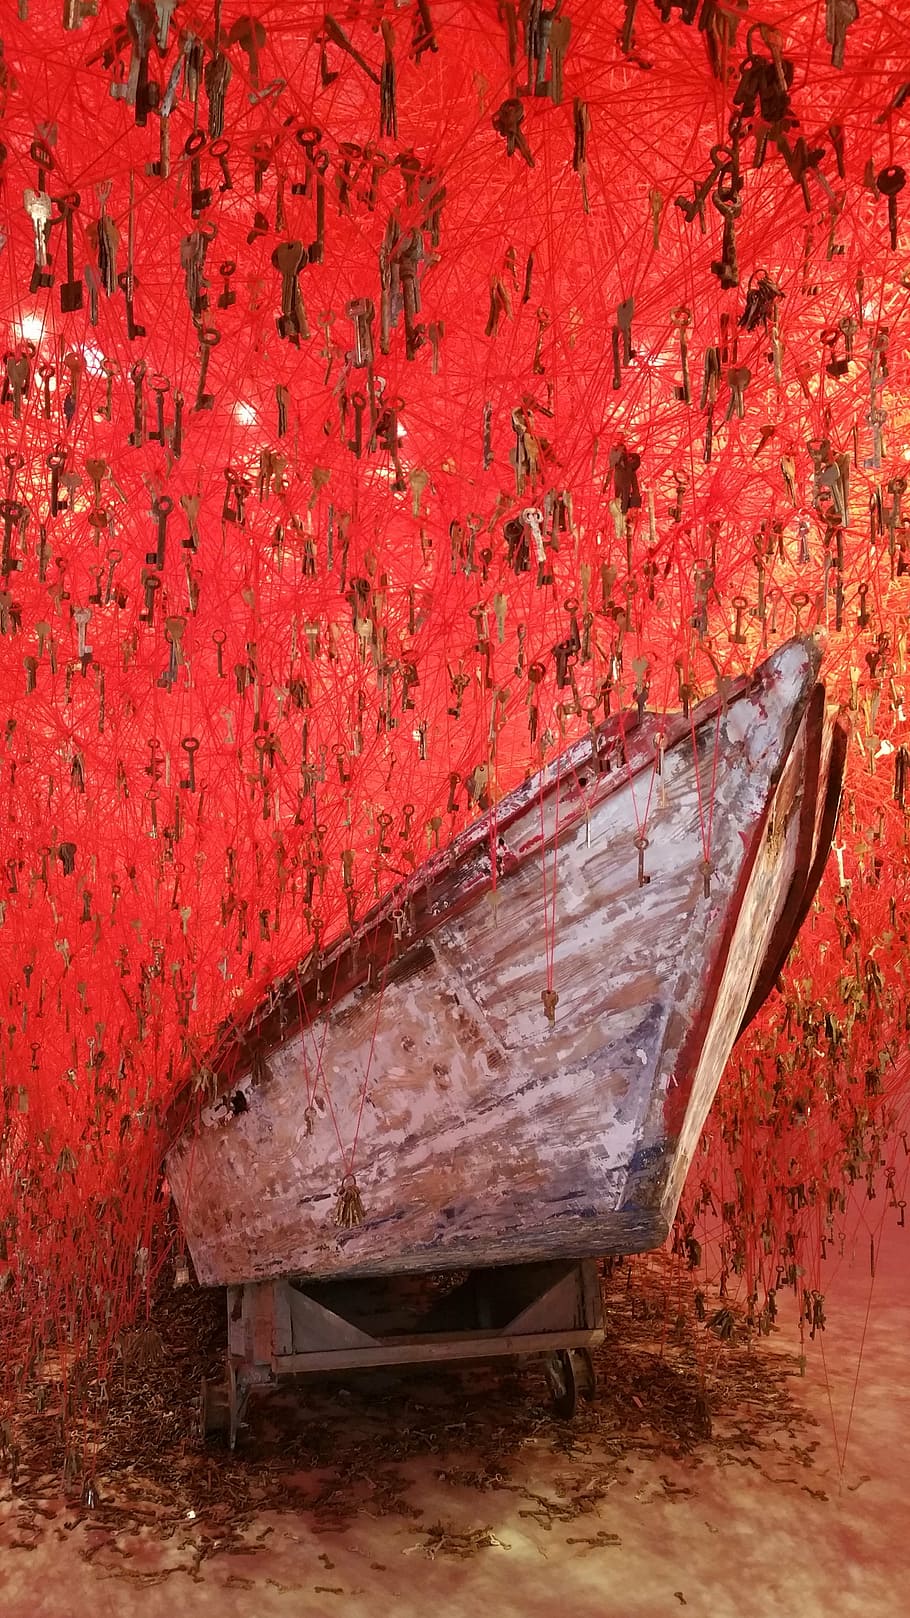 biennale, venice, boat, japan, red, art, modern, key, keys, HD wallpaper